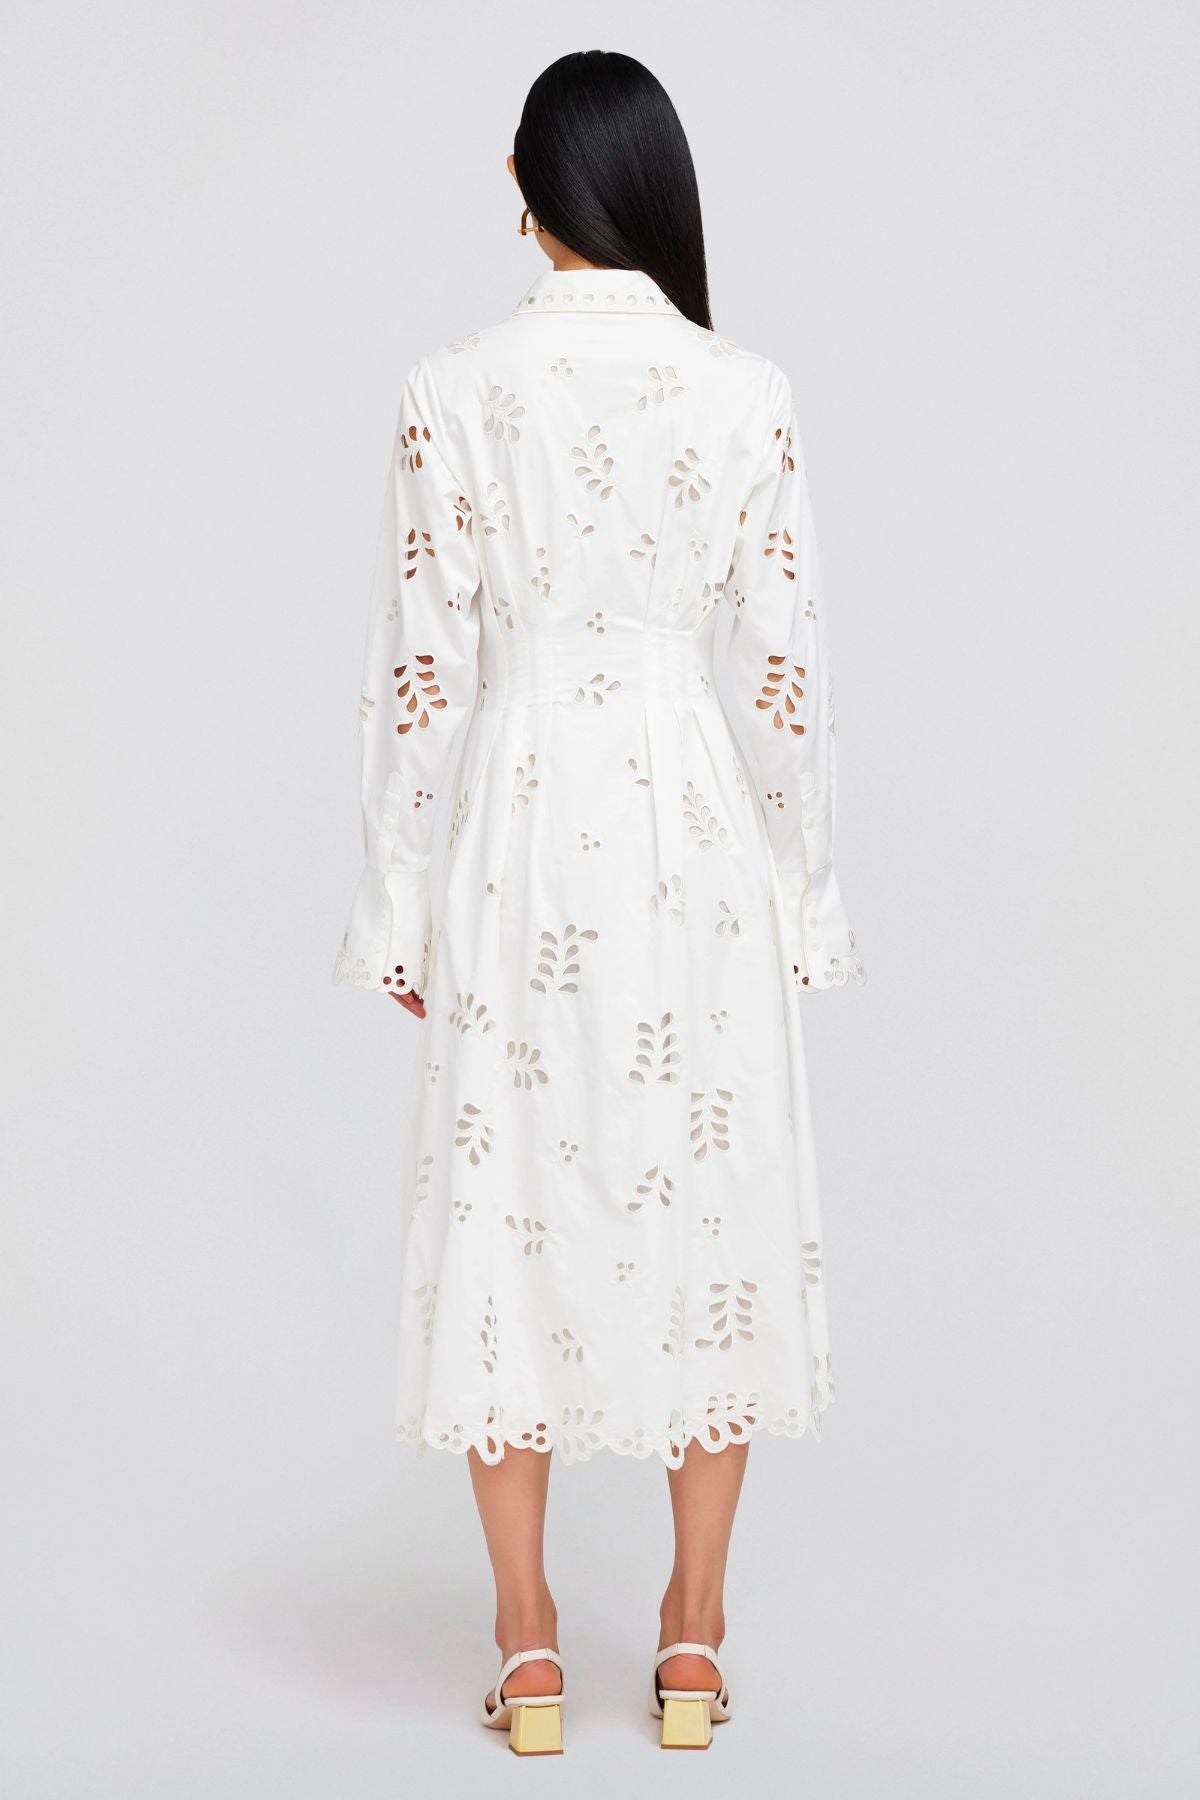 Simkhai Eda Broderie Cotton Midi Dress - White